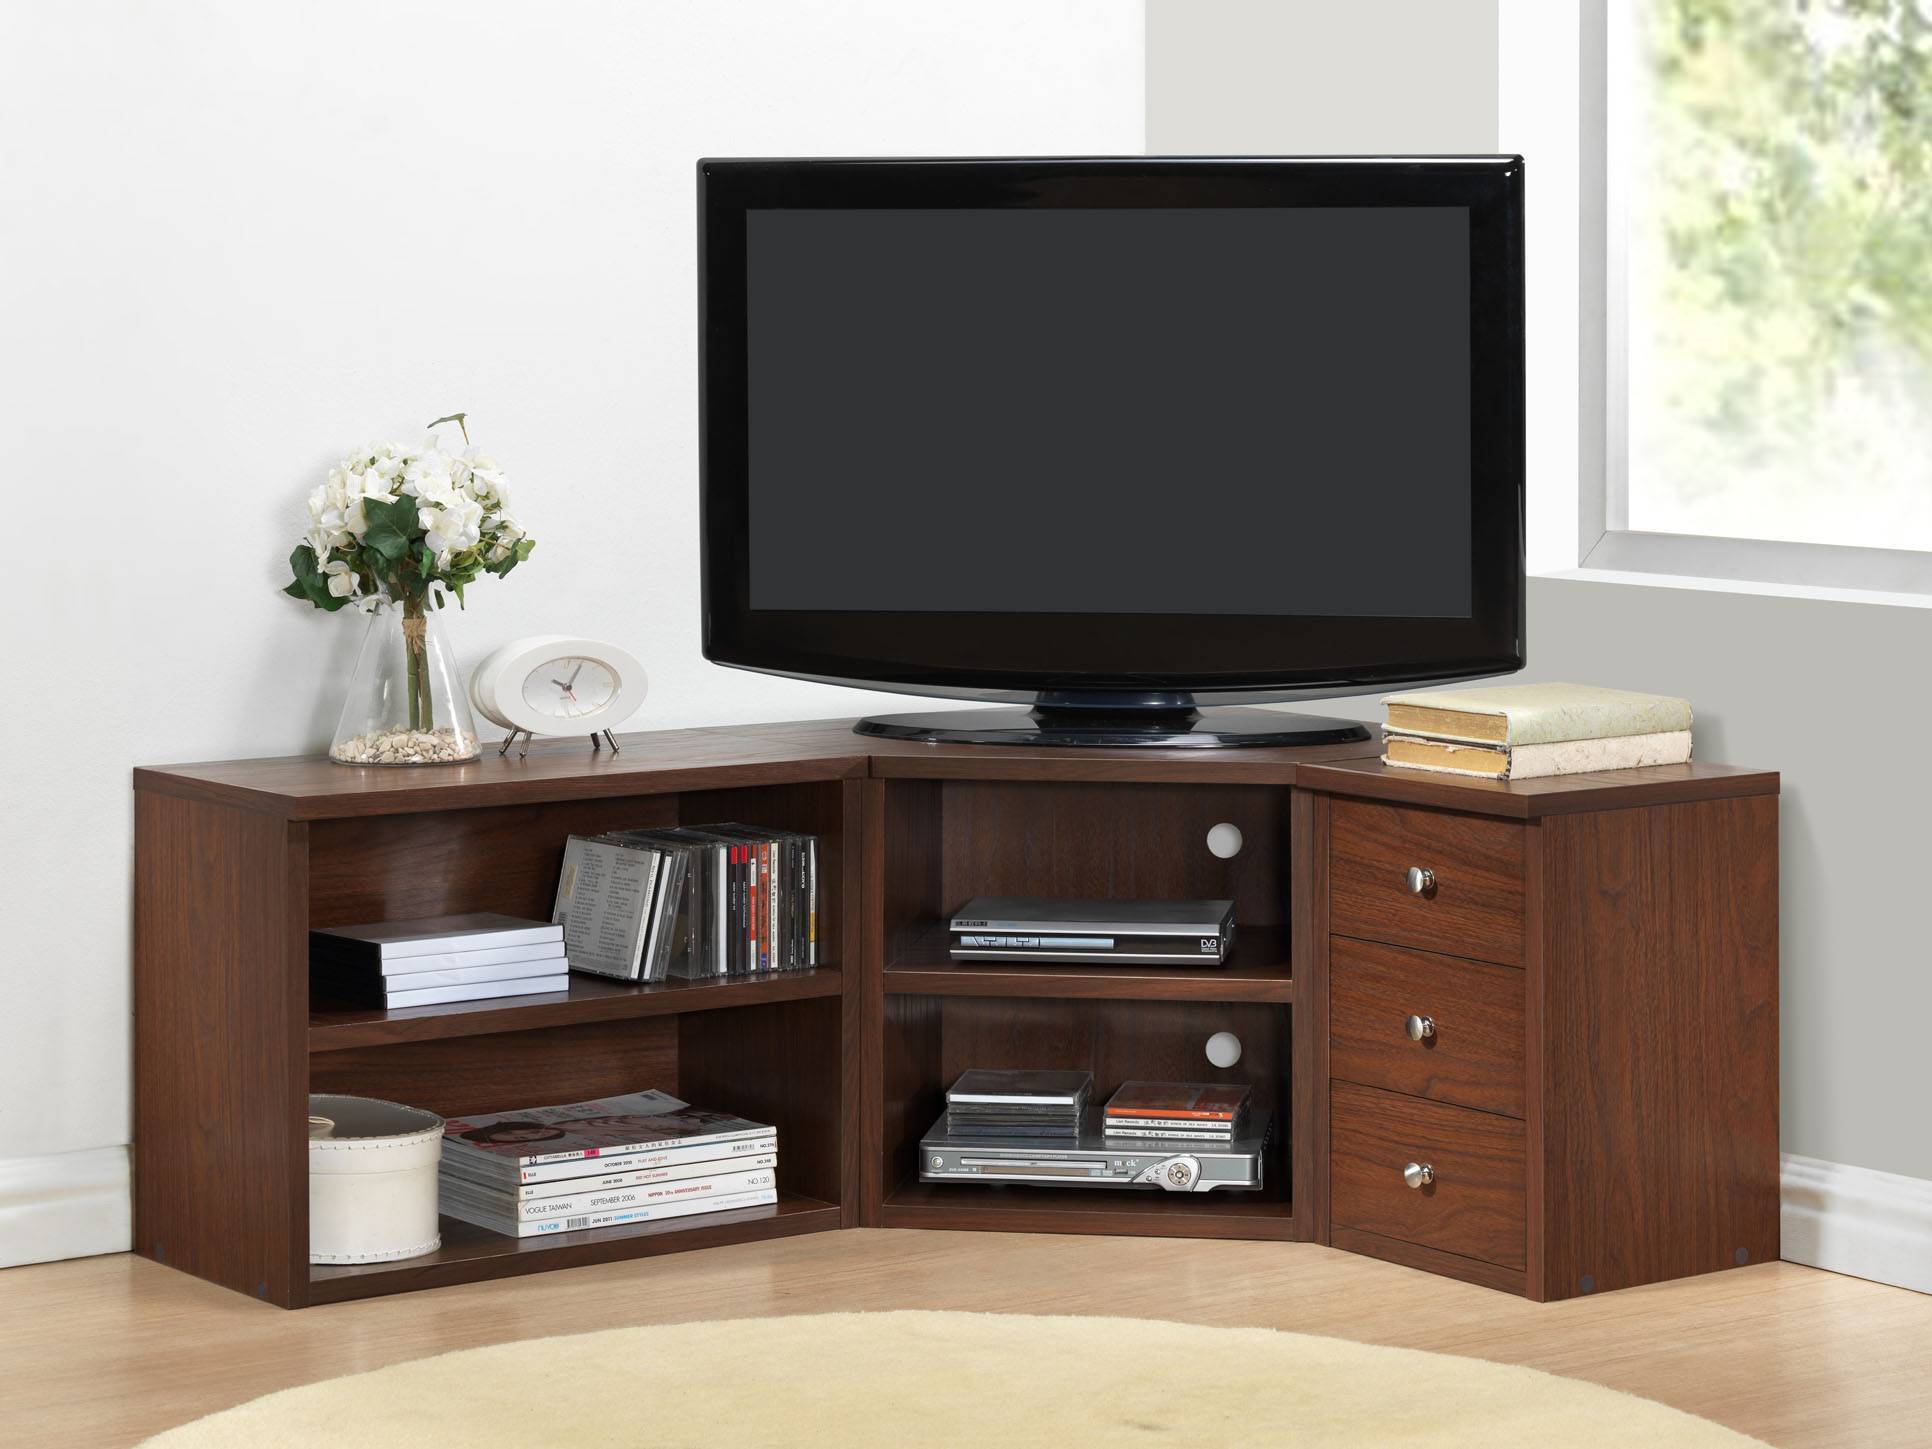 Как выбрать тумбу под телевизор в современном стиле, особенности выбора дизайнерской мебели для гостиной